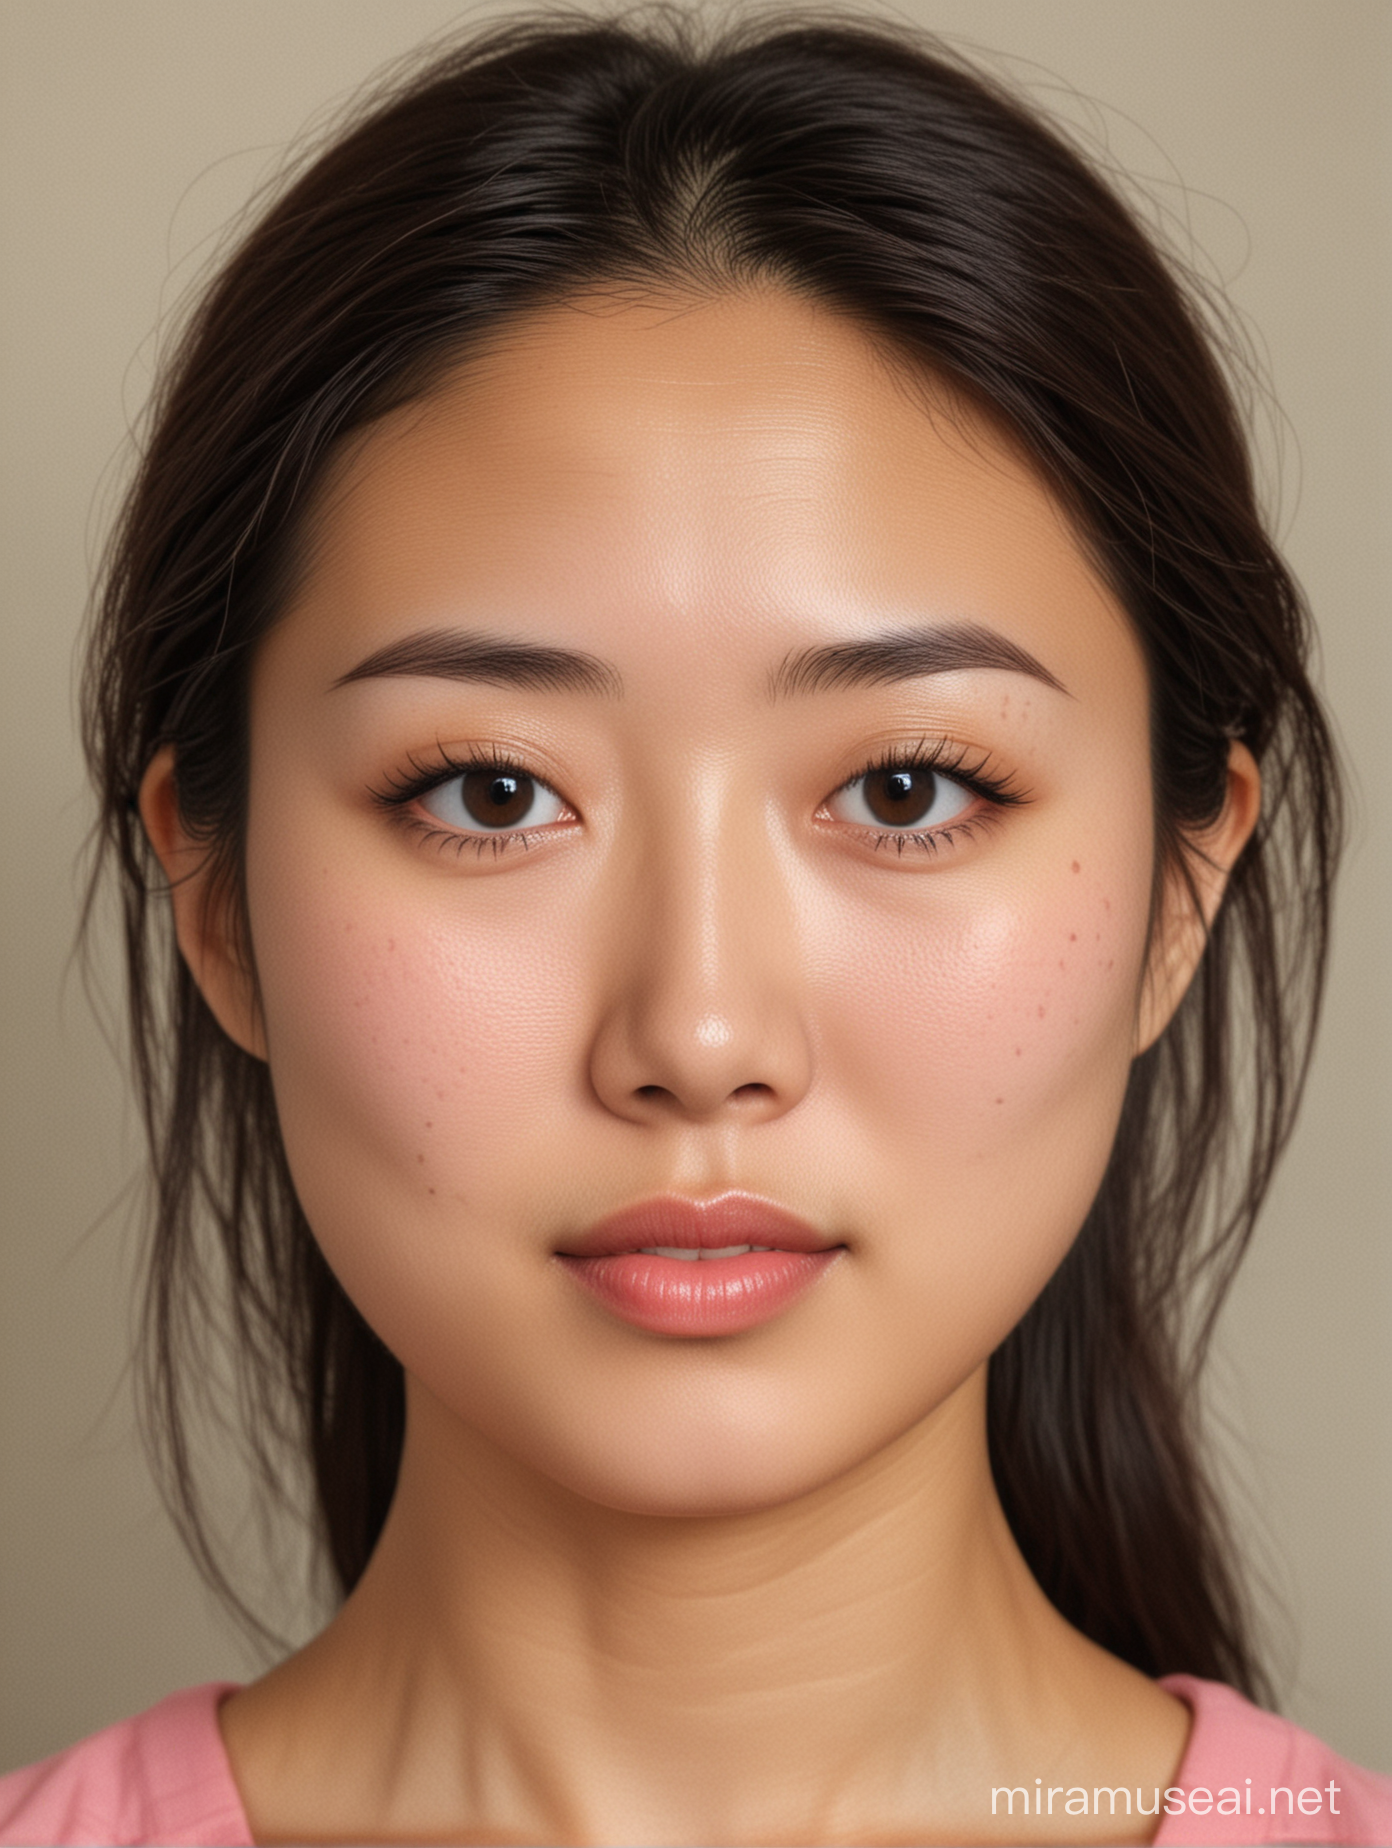 一张30岁中国女人的证件照， 细长的眼睛，眉毛弯弯的， 嘴小，具有东方美，桃子形状的脸